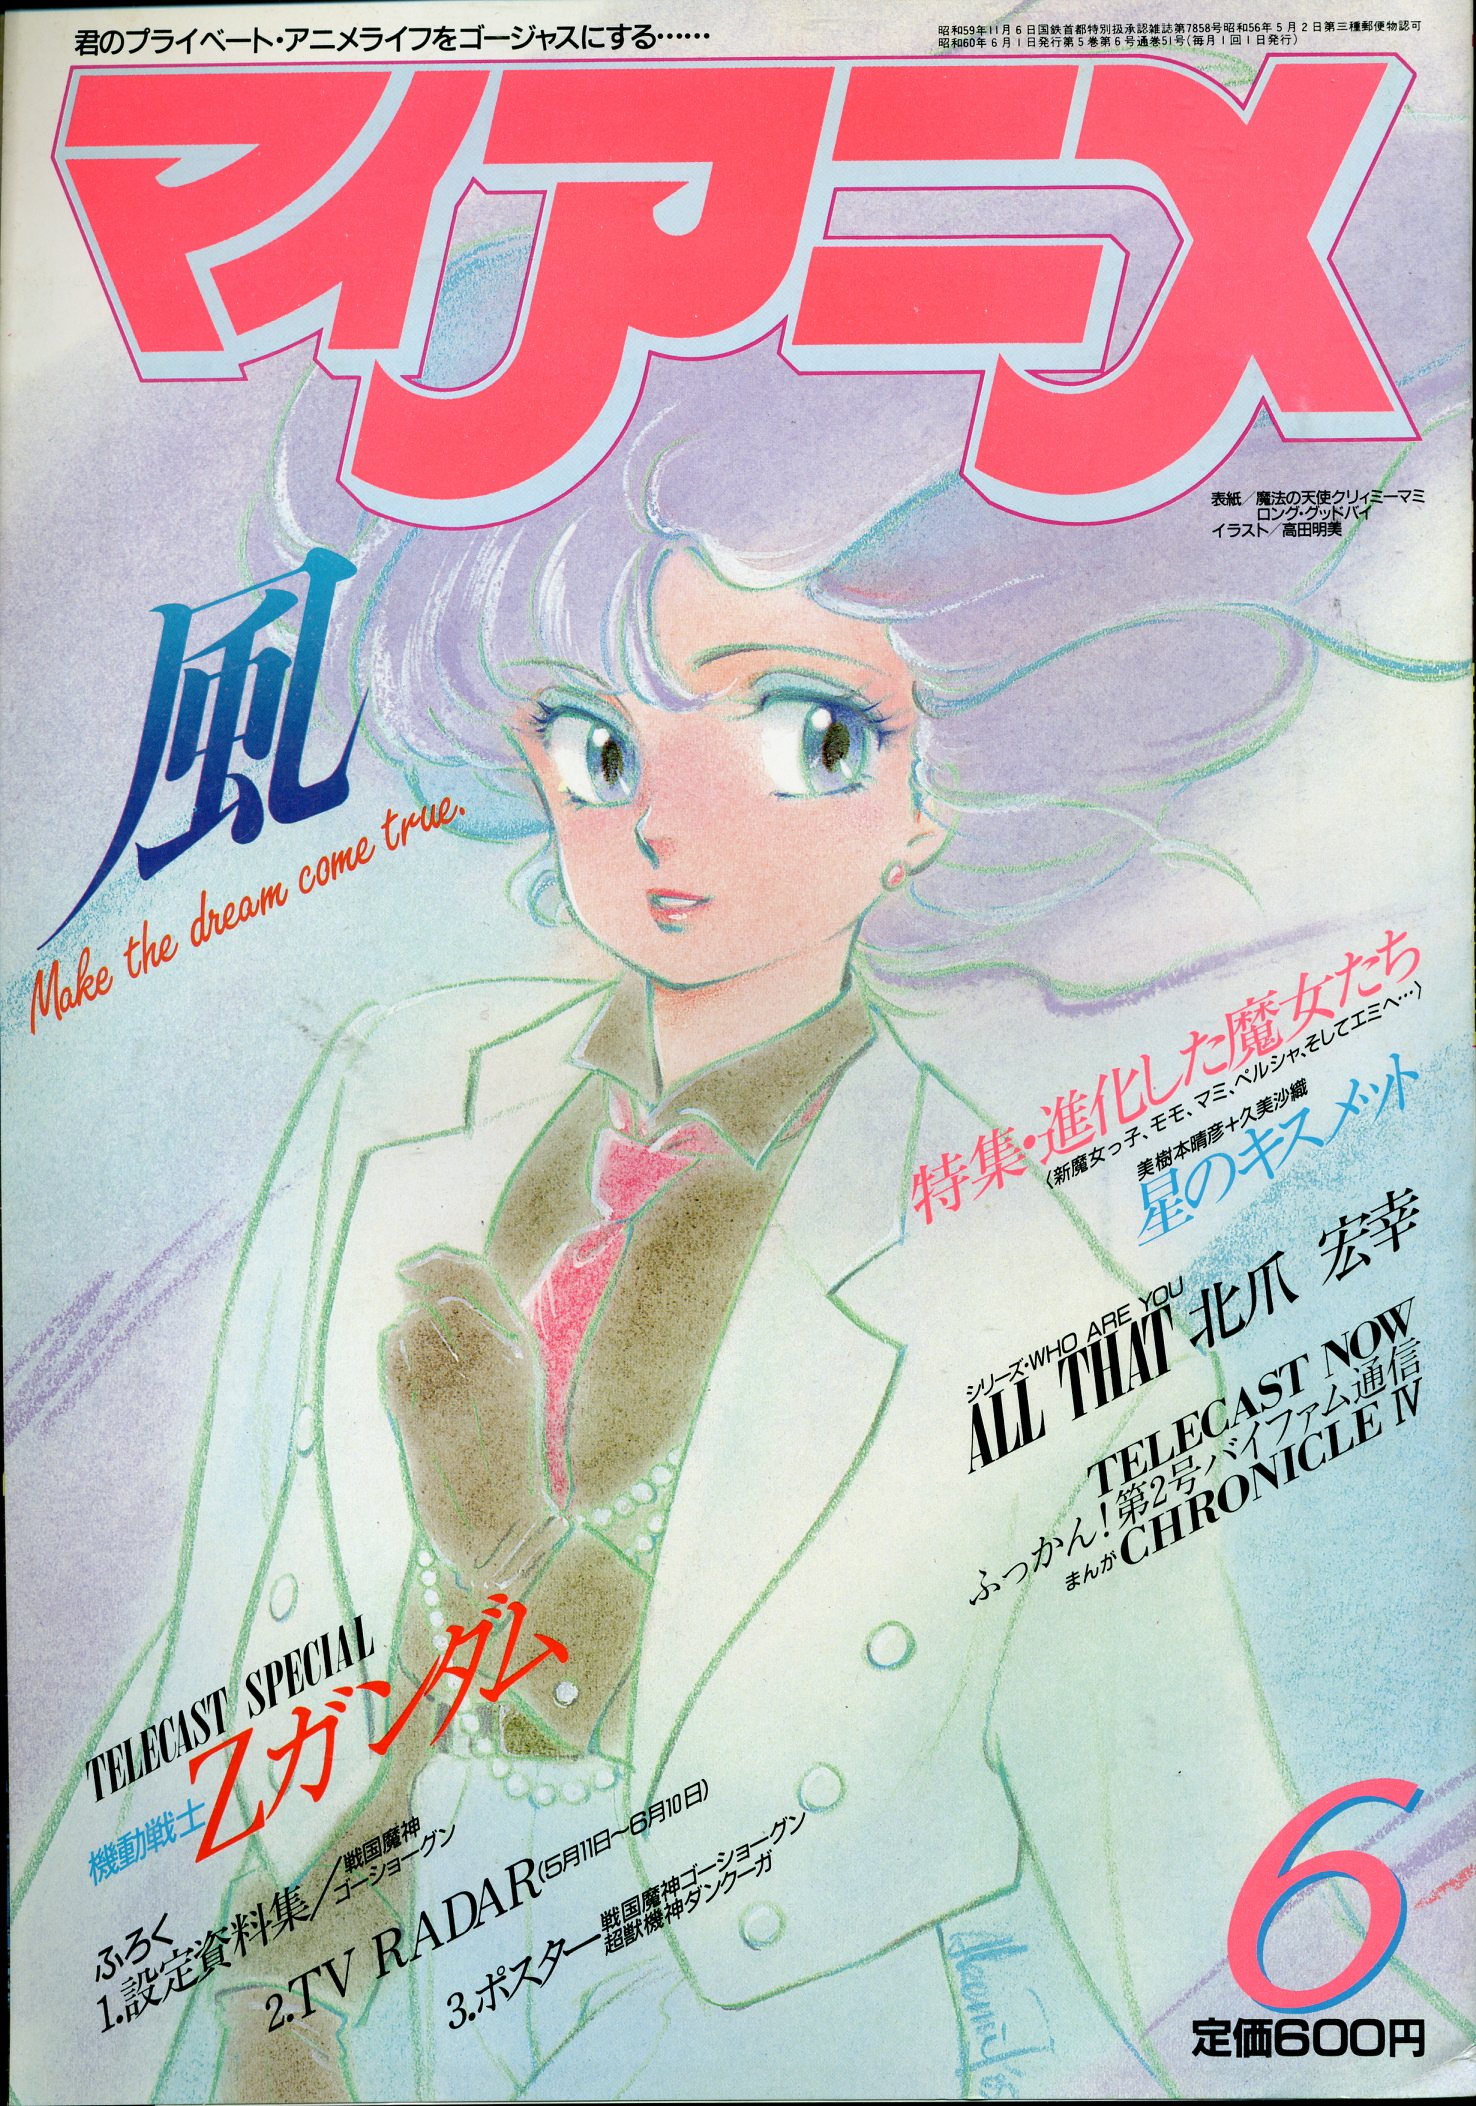 秋田書店 1985年 昭和60年 のアニメ雑誌 本誌のみ マイアニメ 1985年 昭和60年 6月号 8506 まんだらけ Mandarake